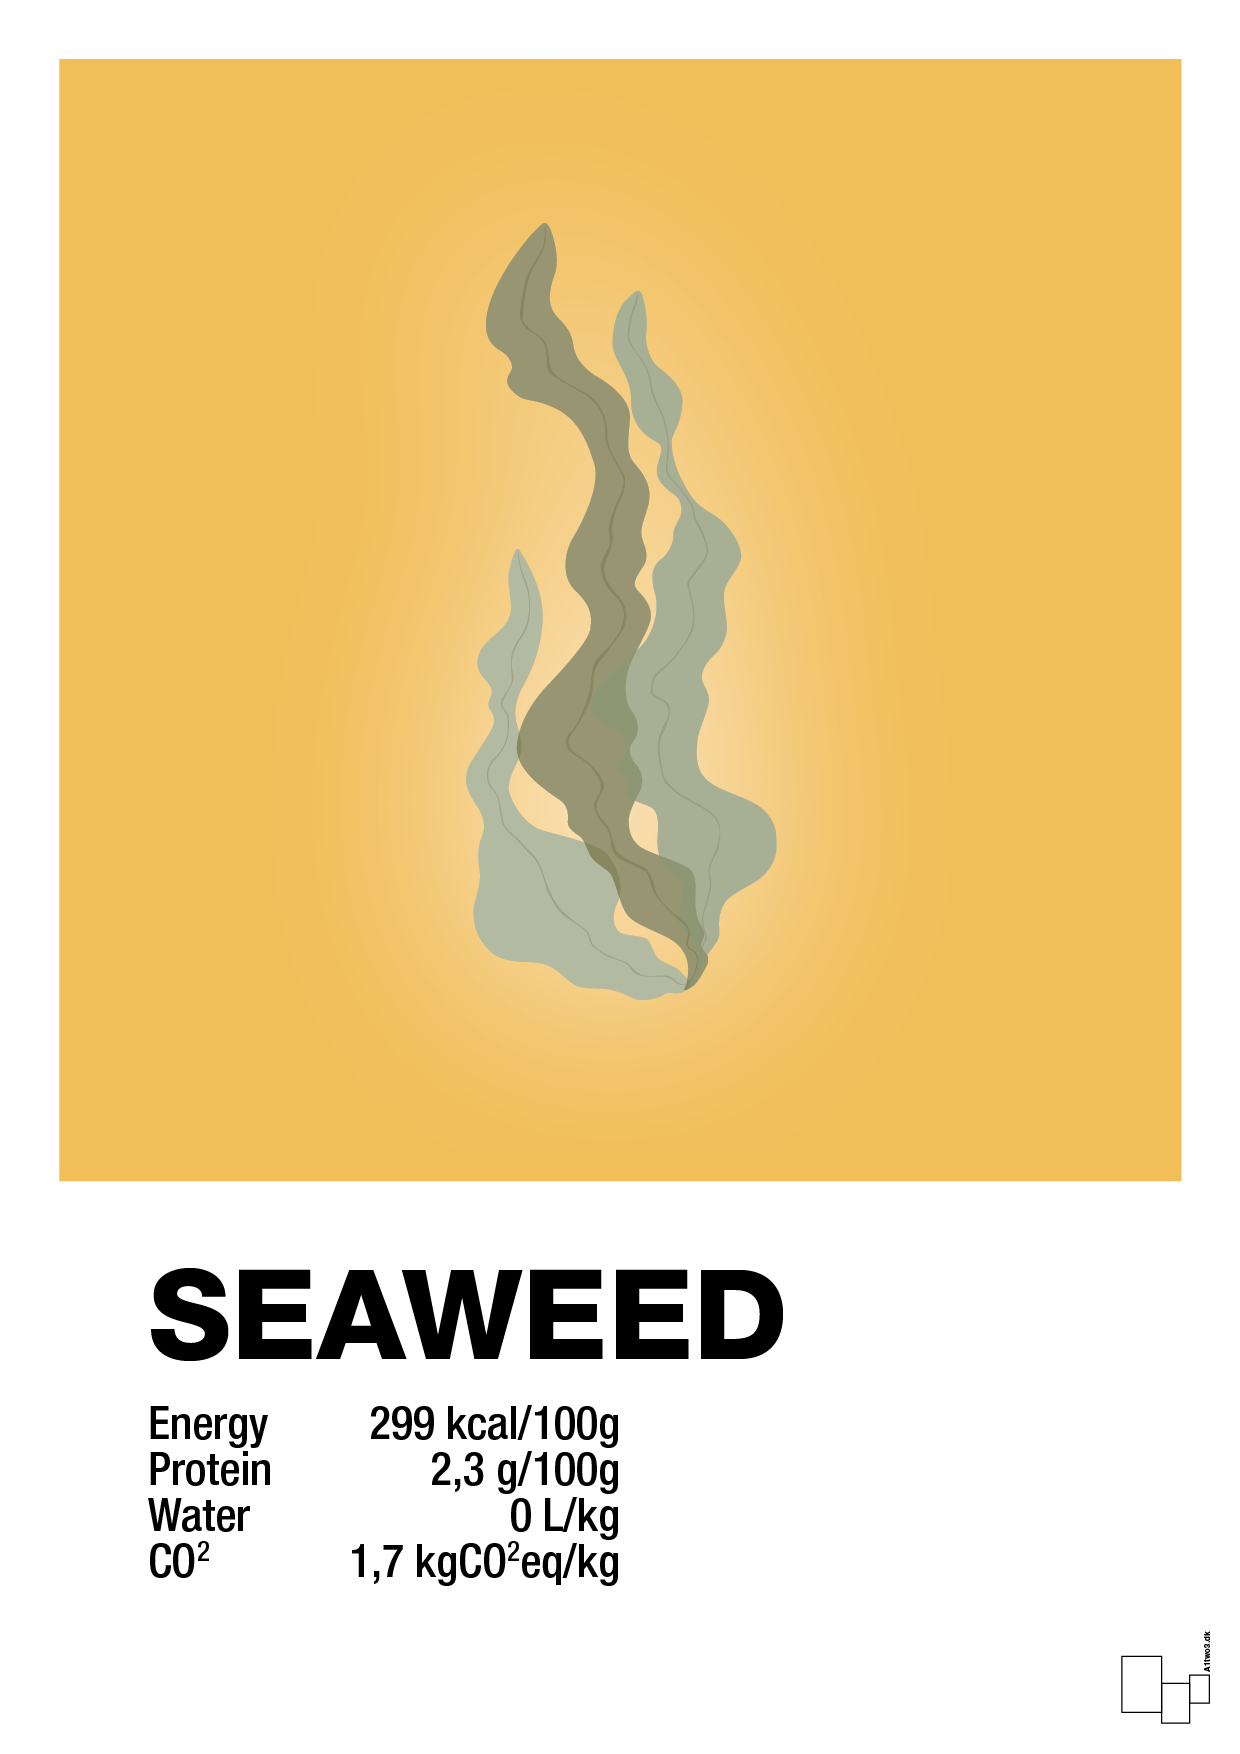 seaweed nutrition og miljø - Plakat med Mad & Drikke i Honeycomb